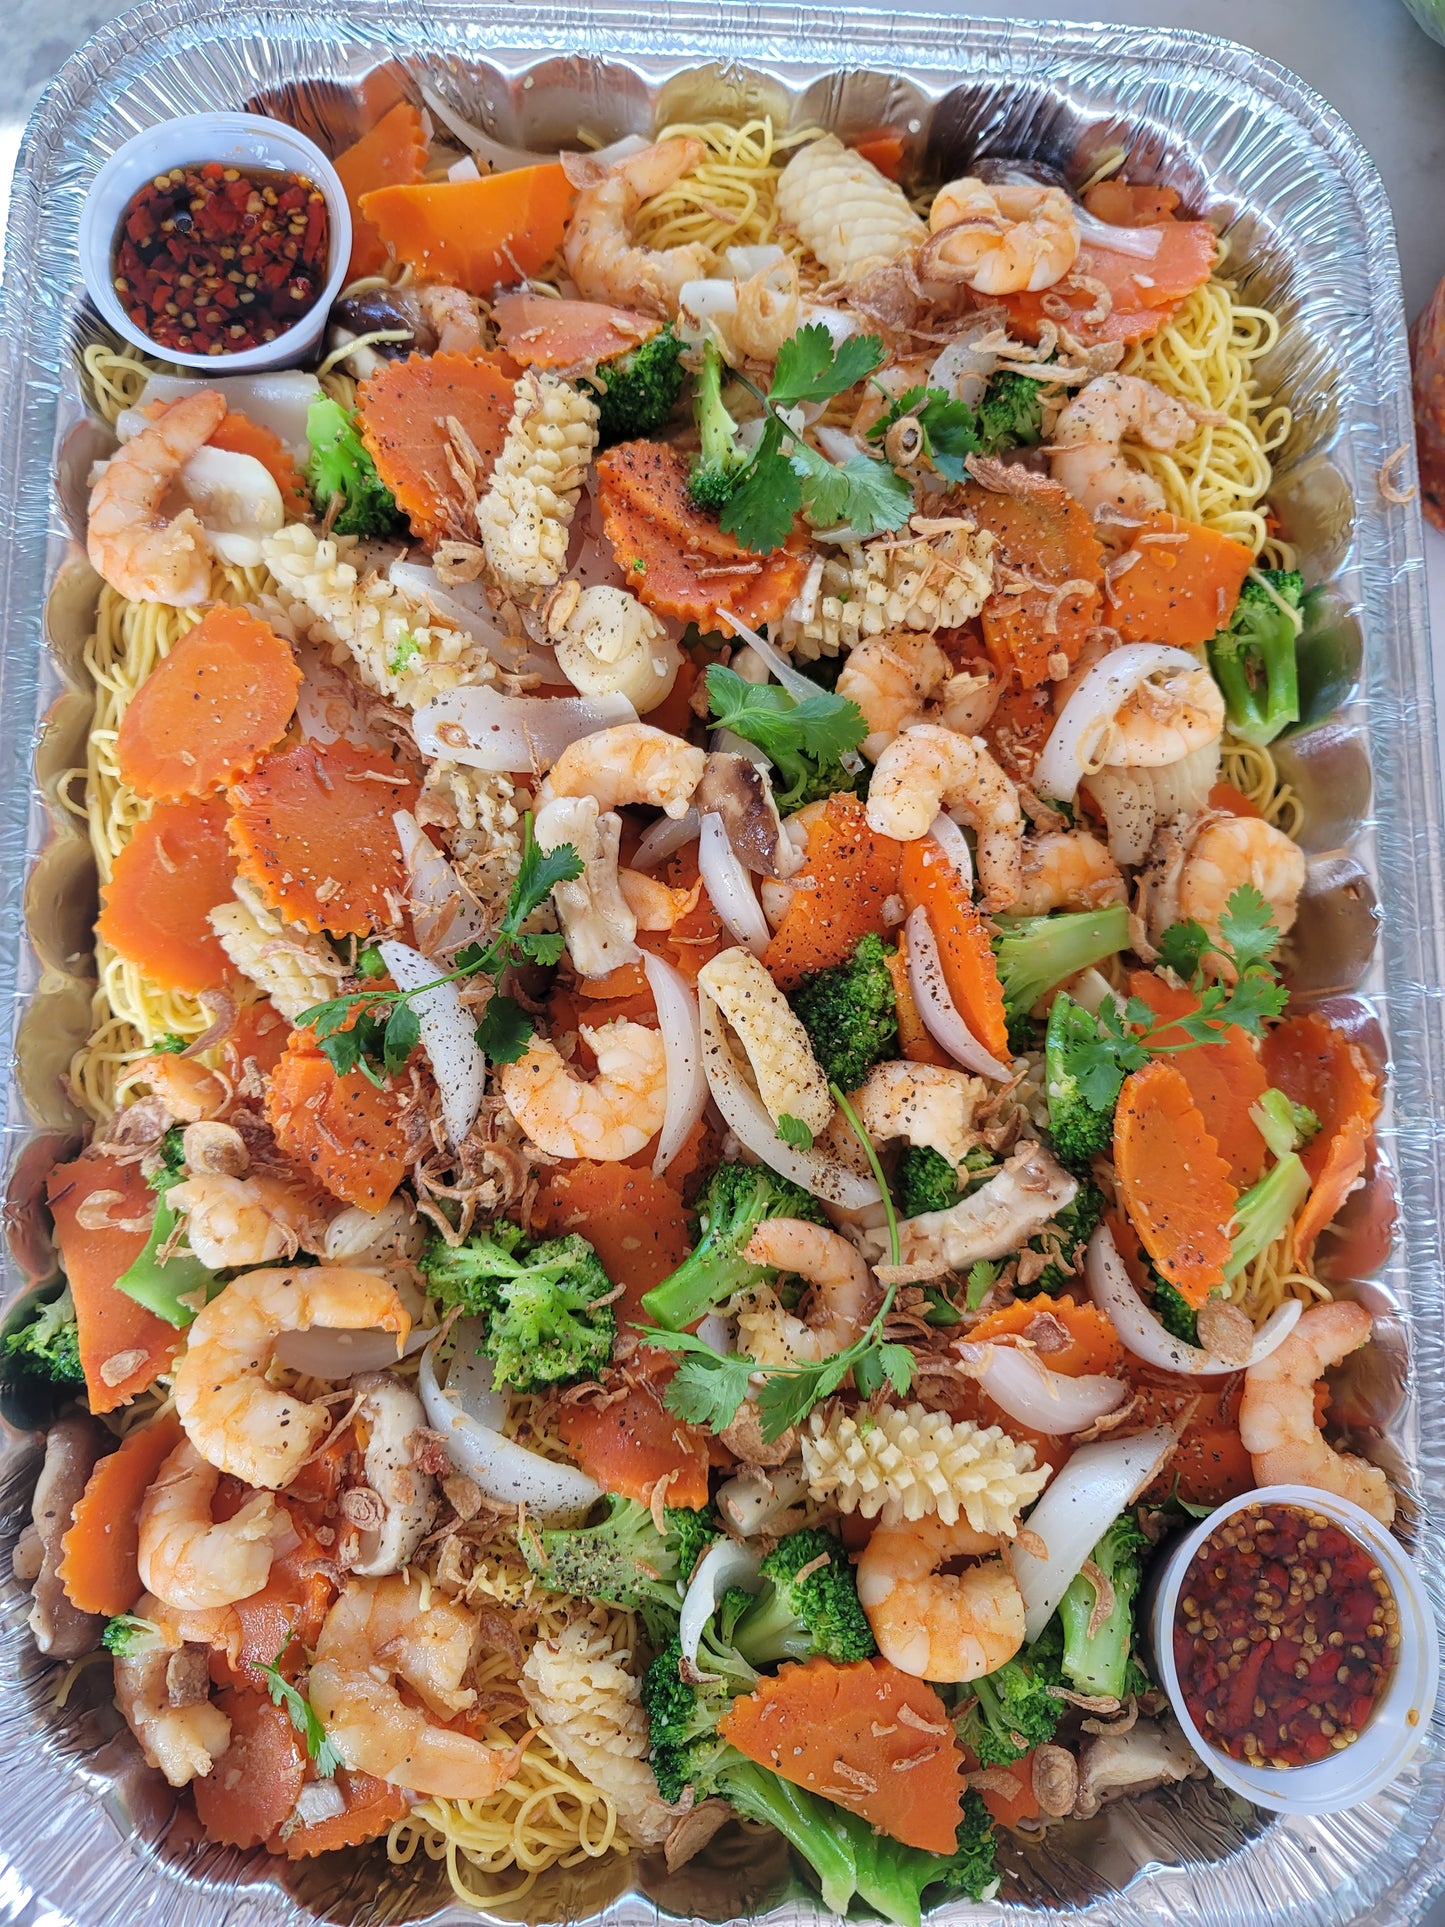 Mì Hoàng Gia Thập Cẩm - Hoàng Gia Special Seafood Noodles